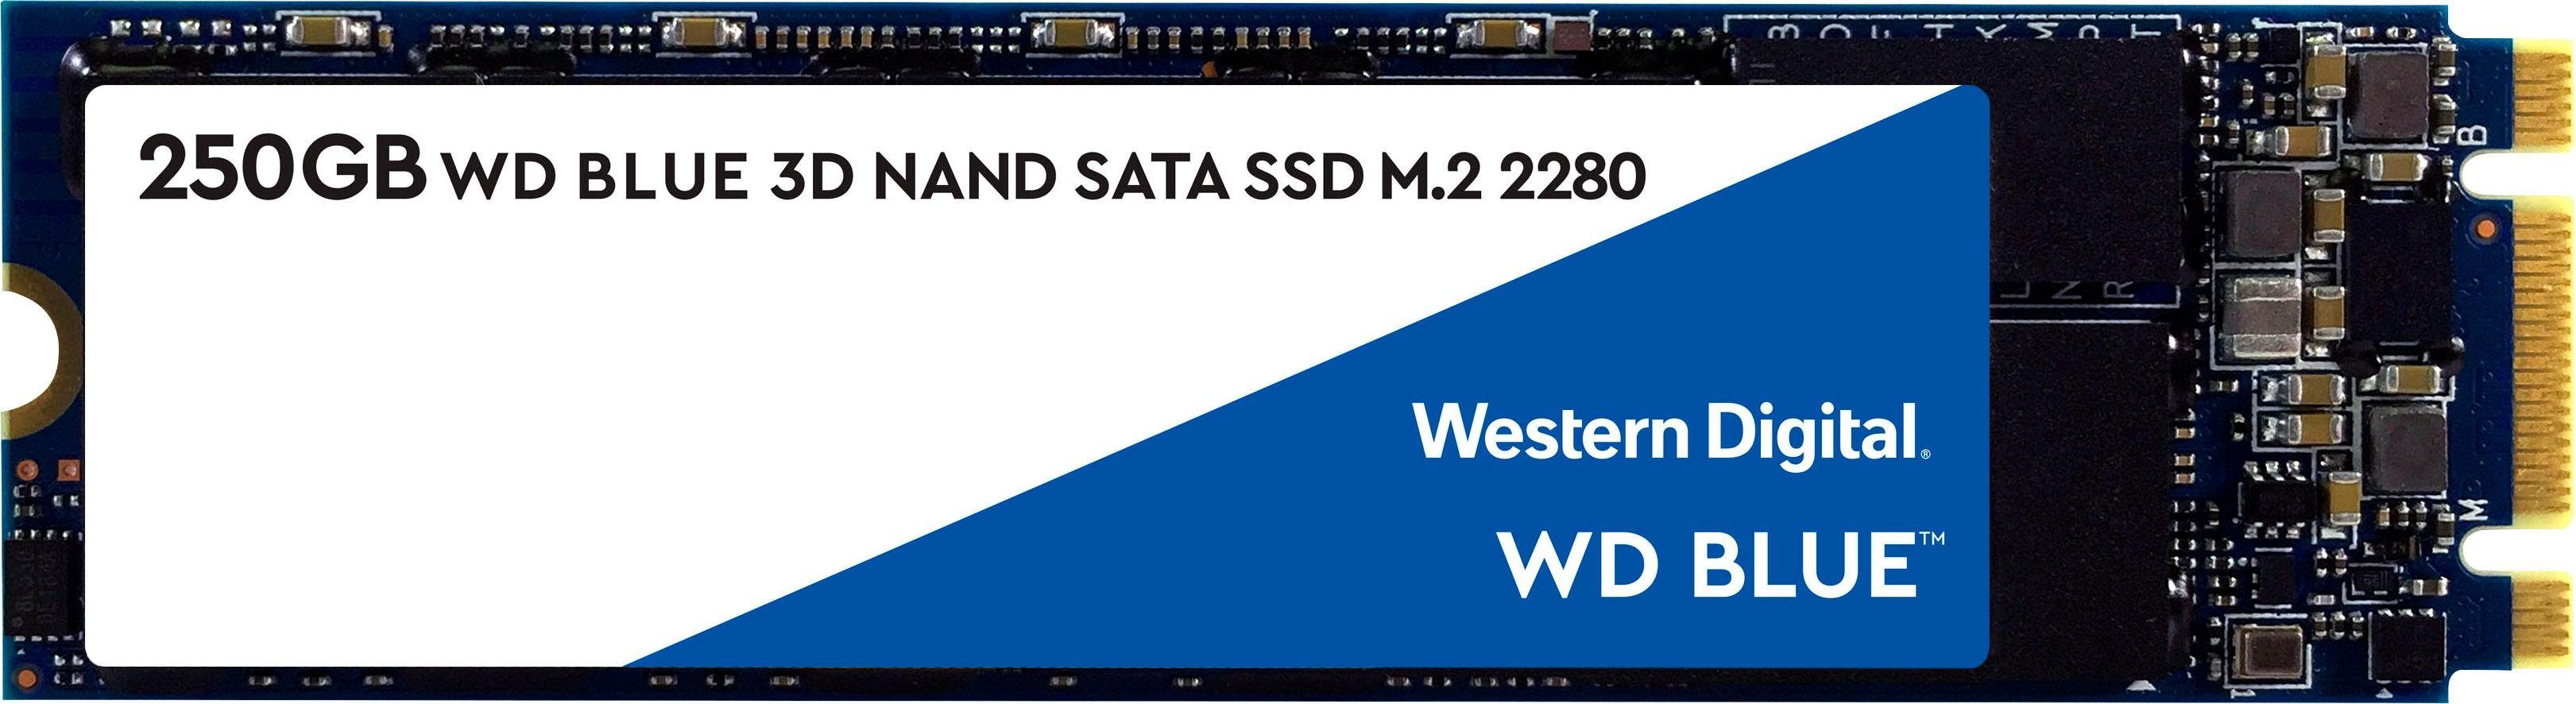 »wd blue 3d nand sata ssd« interne ssd (250 gb) 550 mb/s lesegeschwindigkeit, 525 mb/s schreibgeschwindigkeit)